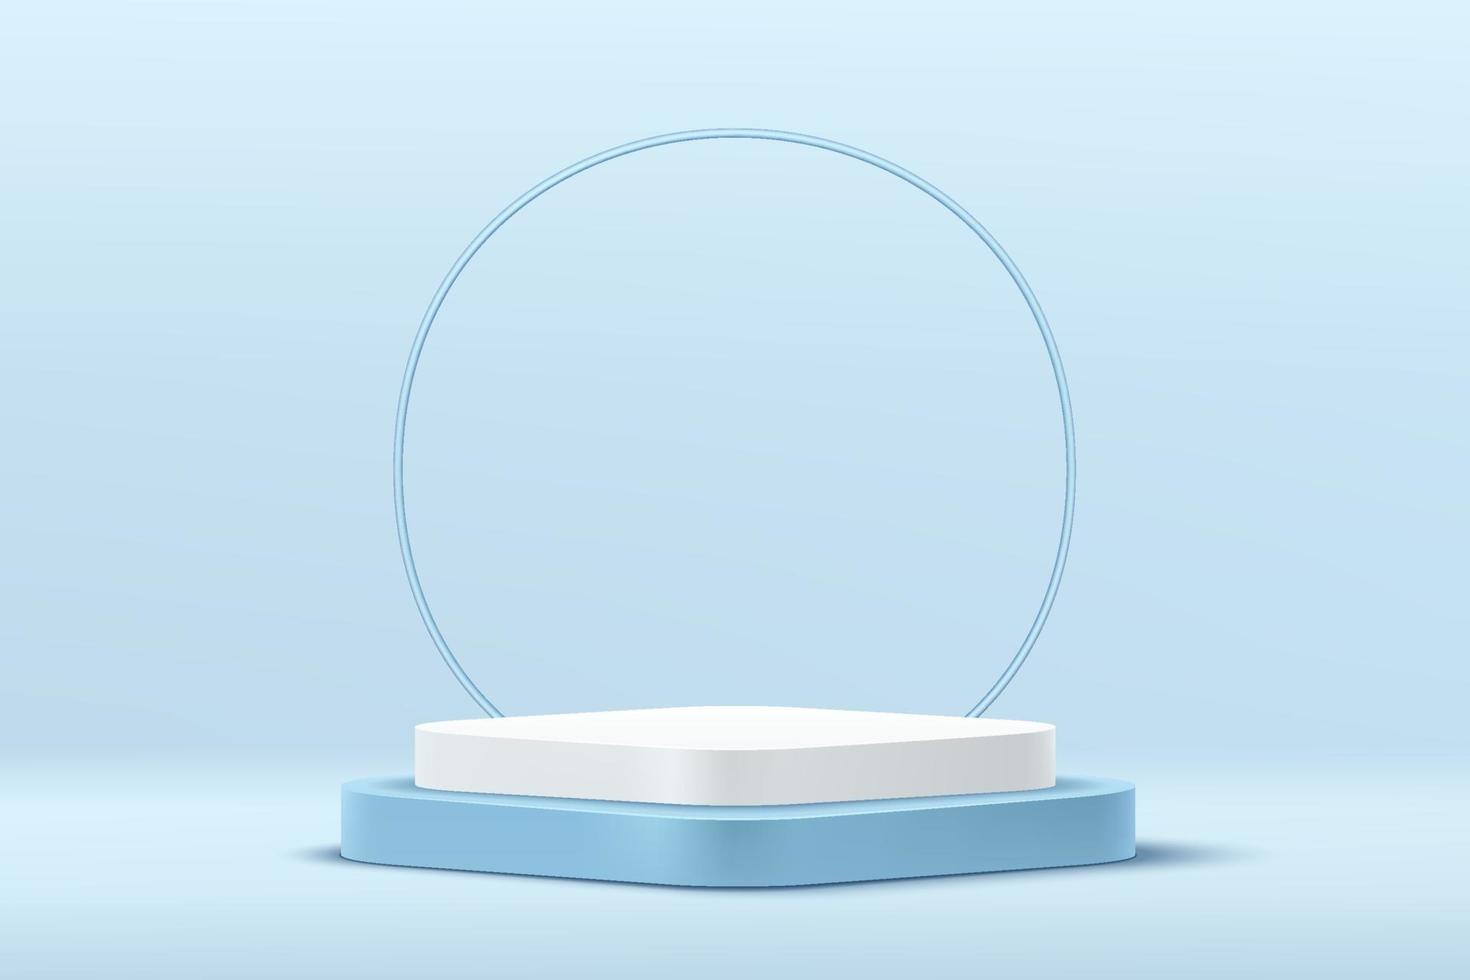 moderno podio de pedestal de cubo de esquina redonda blanco y azul con fondo de anillo de círculo azul. Escena mínima de color azul pastel abstracto. Representación vectorial Presentación de exhibición de producto de forma geométrica de plataforma 3D vector